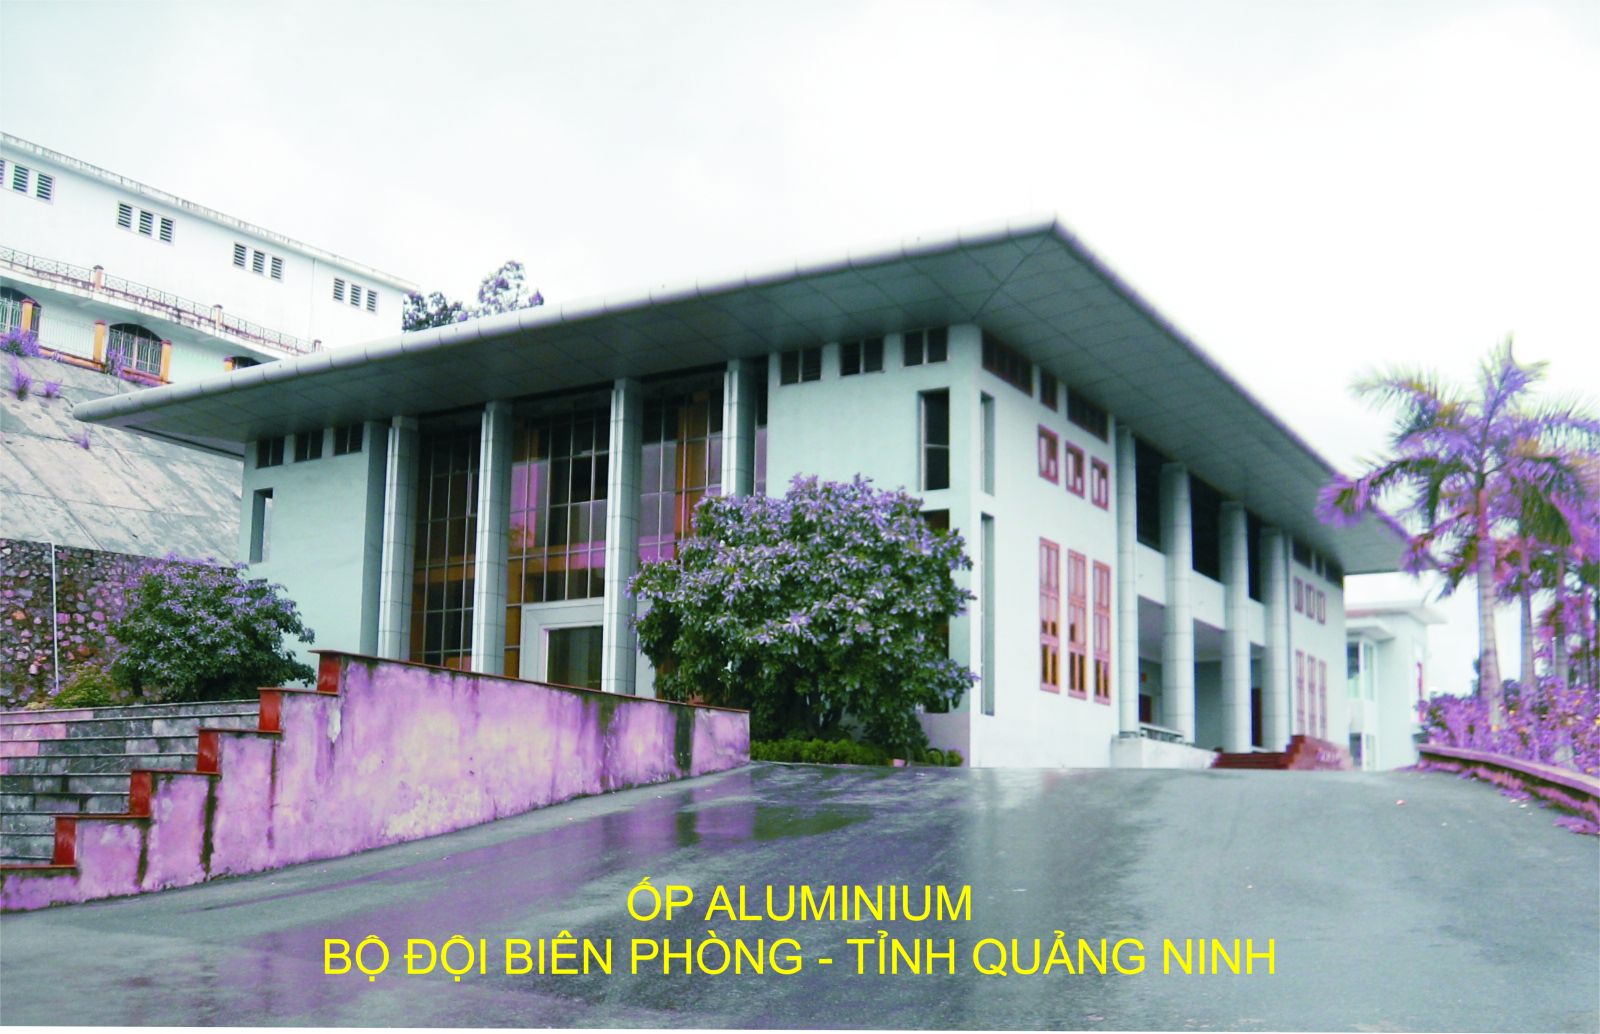 Trần nhôm Astrongest, ốp alu - Biên Phòng Quảng Ninh